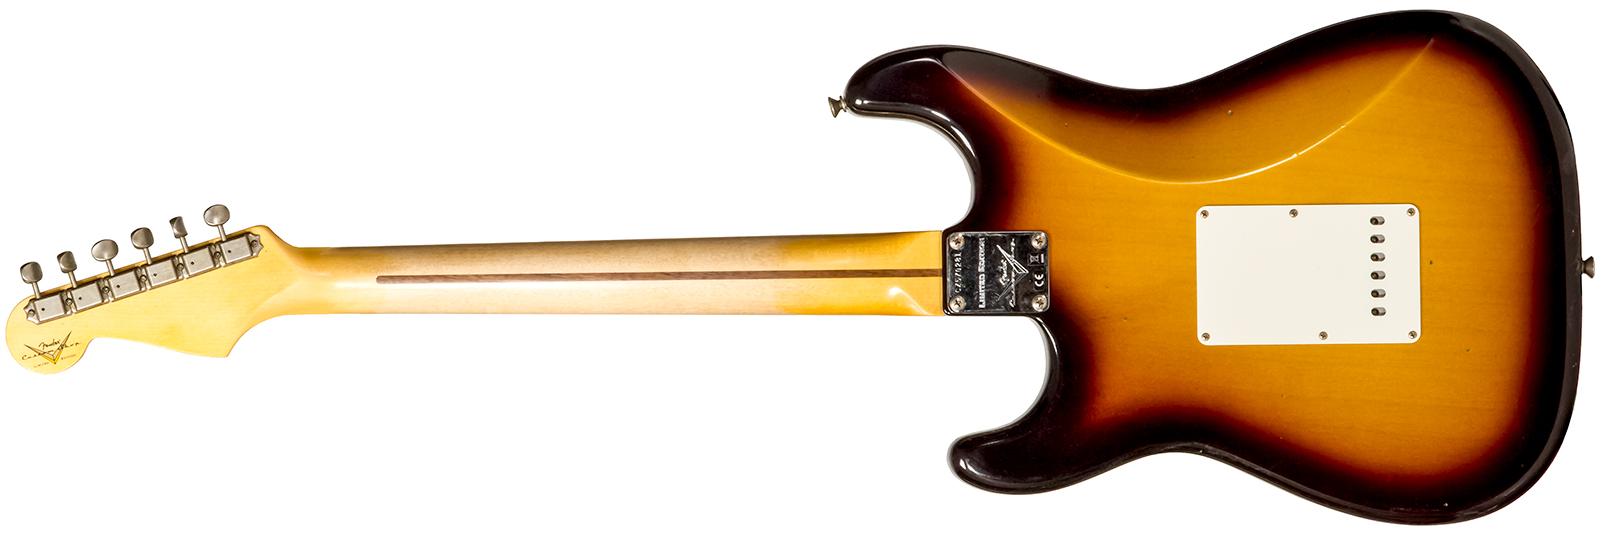 Fender Custom Shop Strat 1956 3s Trem Mn #cz570281 - Journeyman Relic Aged 2-color Sunburst - E-Gitarre in Str-Form - Variation 1